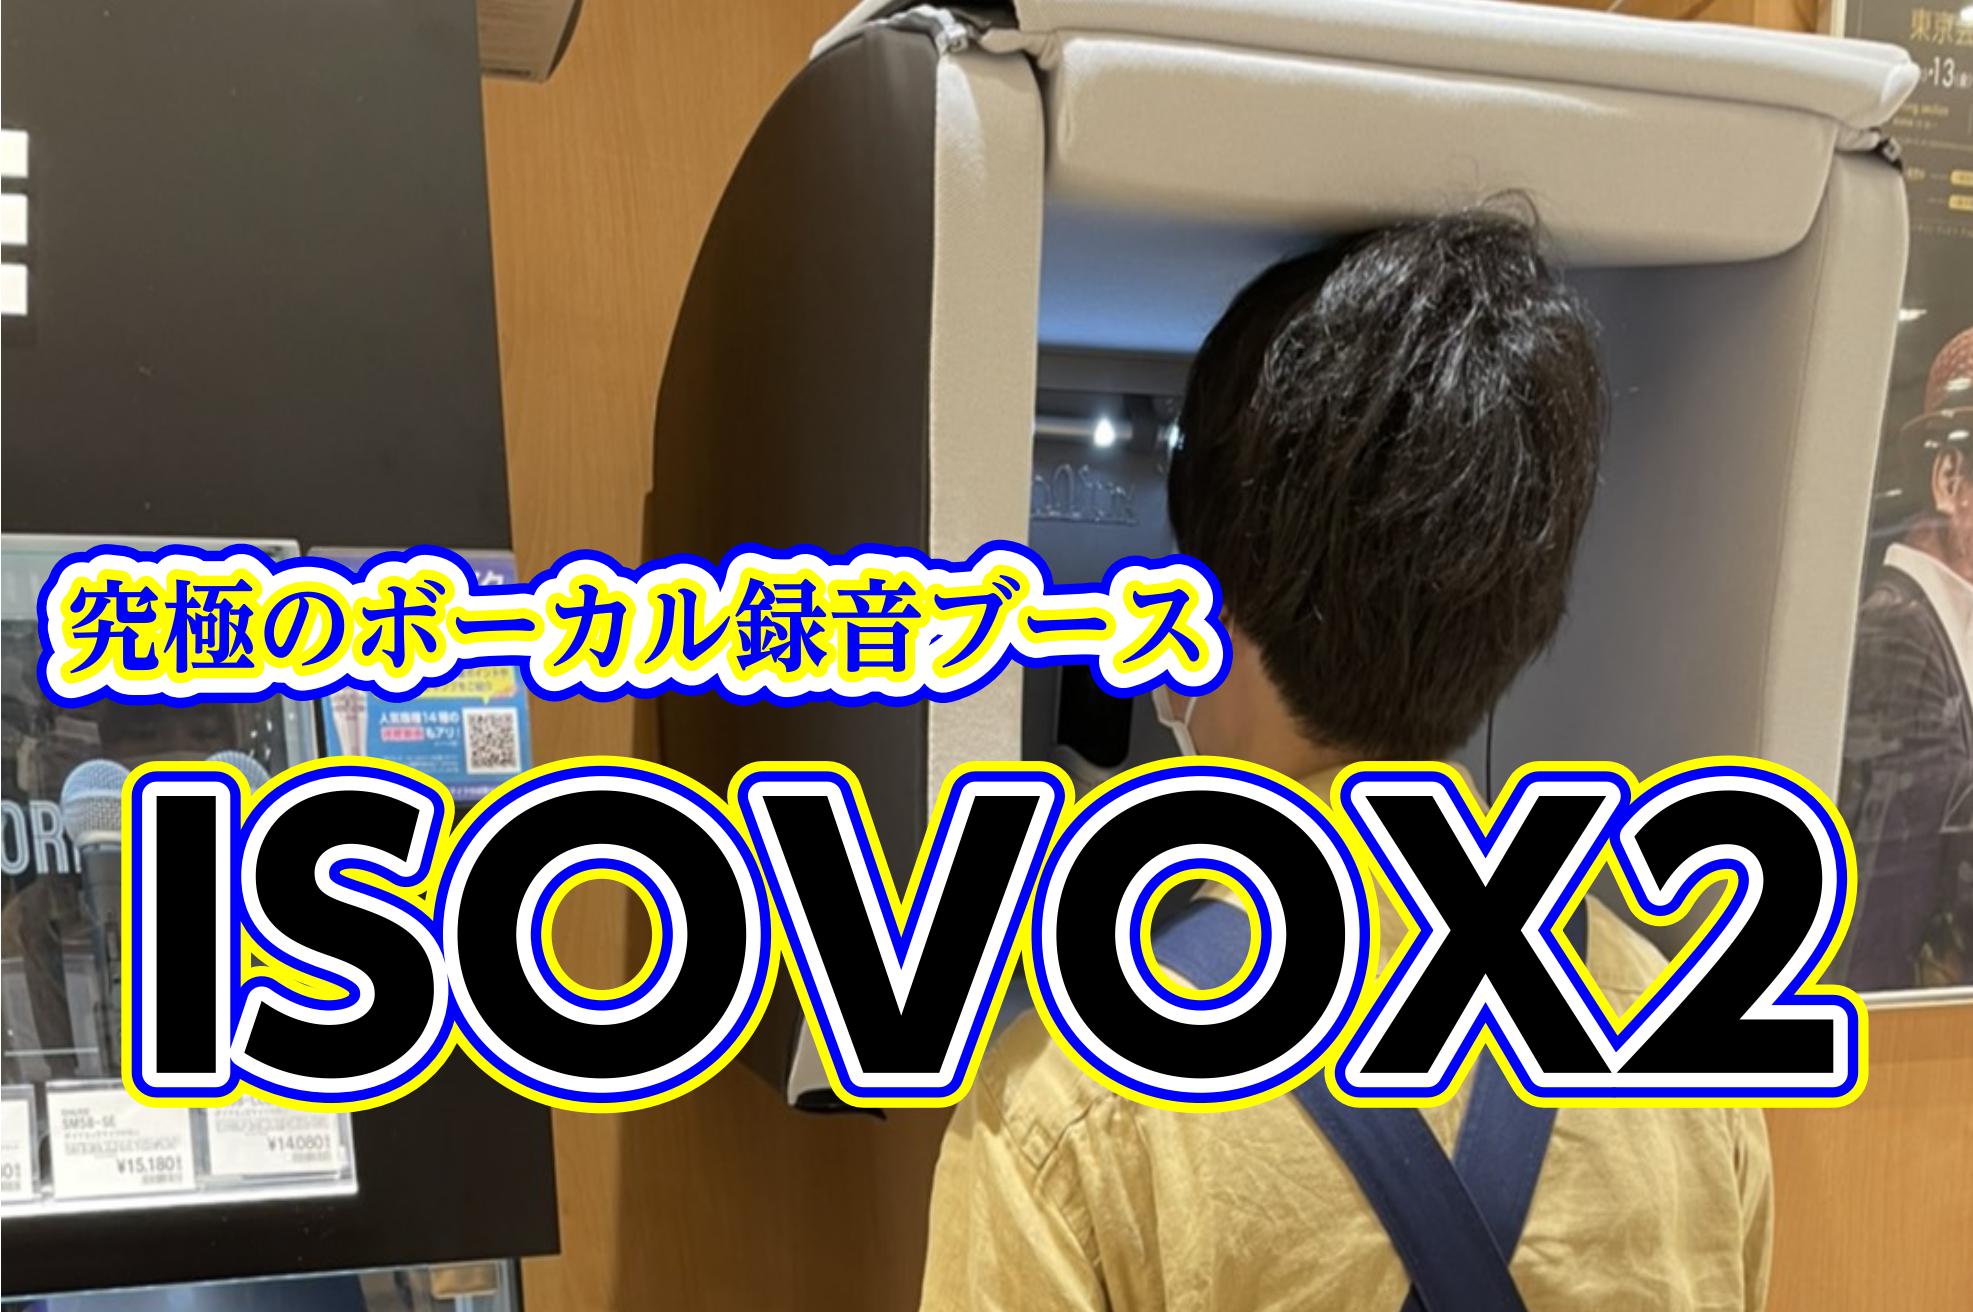 【防音】究極のボーカル録音ブース ISOVOX 2が入荷！！！！